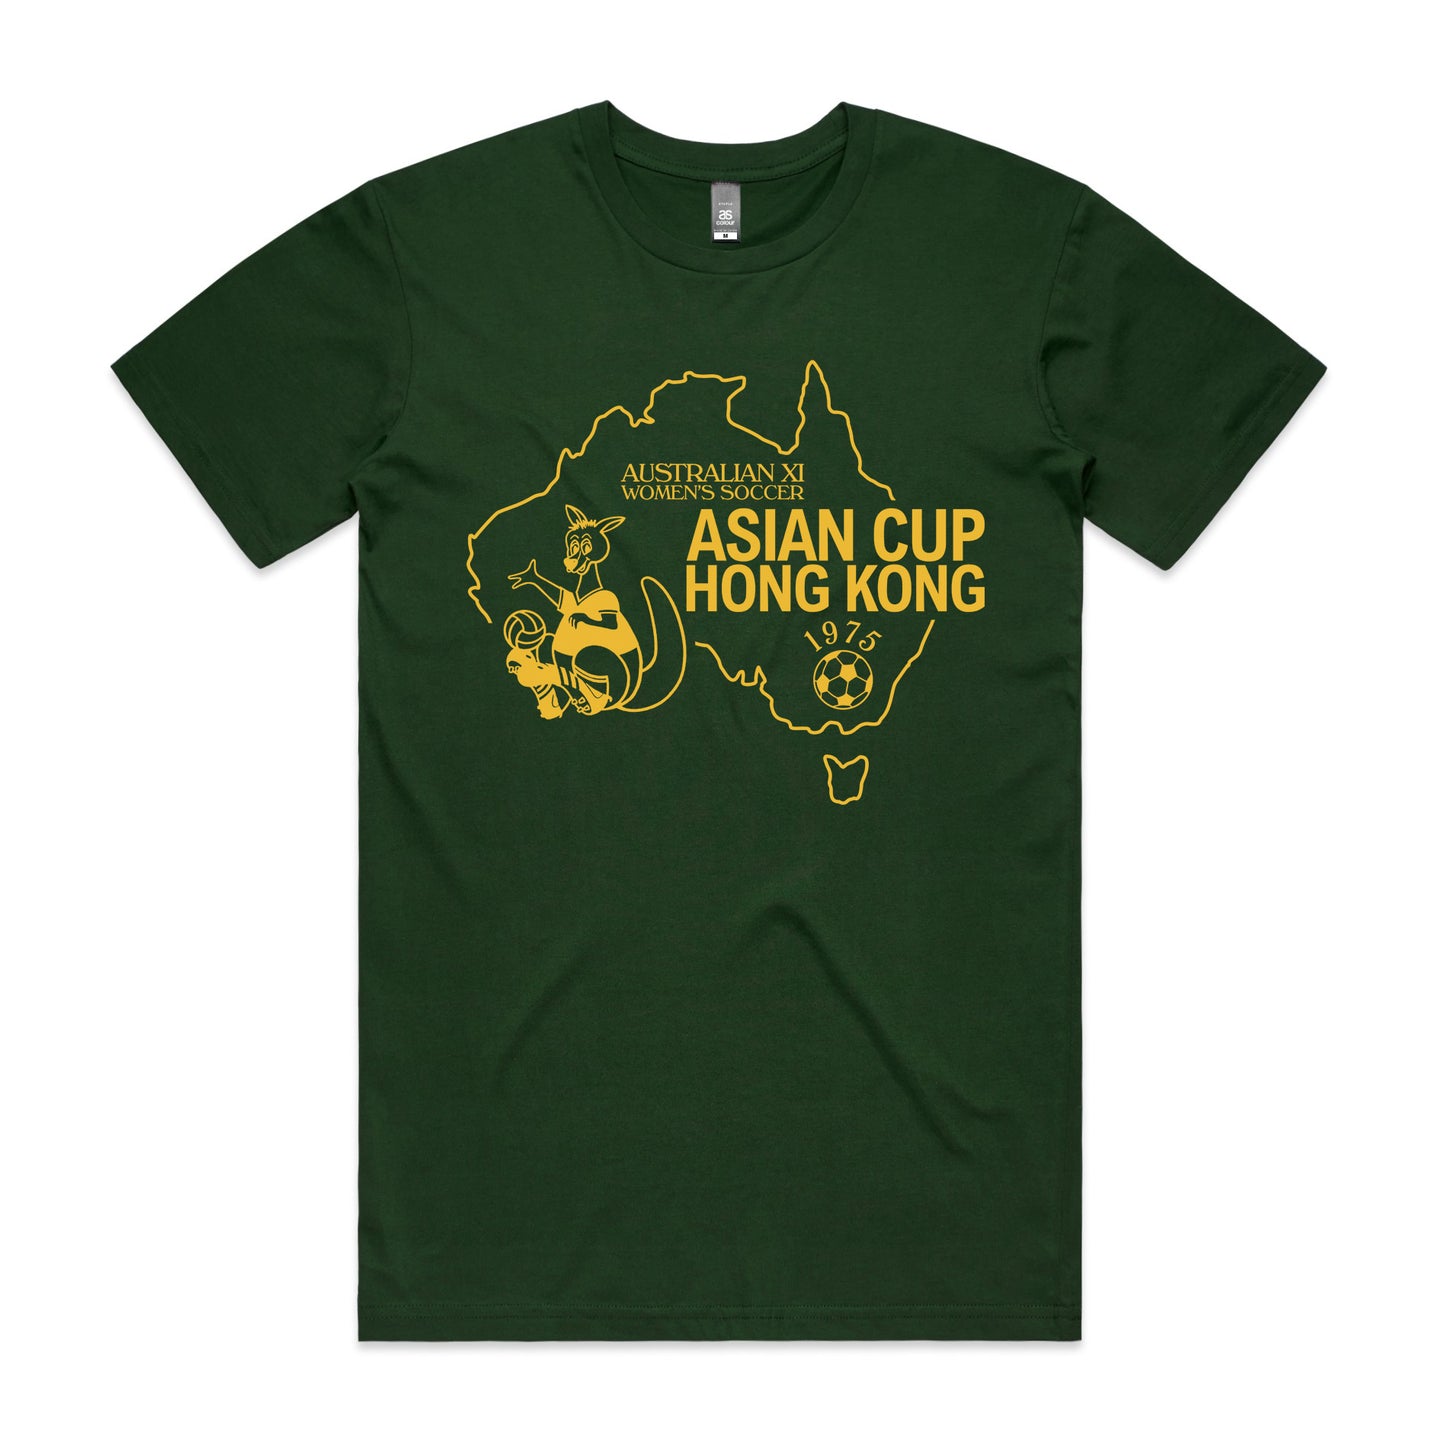 Australian XI Women's Soccer Asian Cup Hong Kong 1975 T-shirt